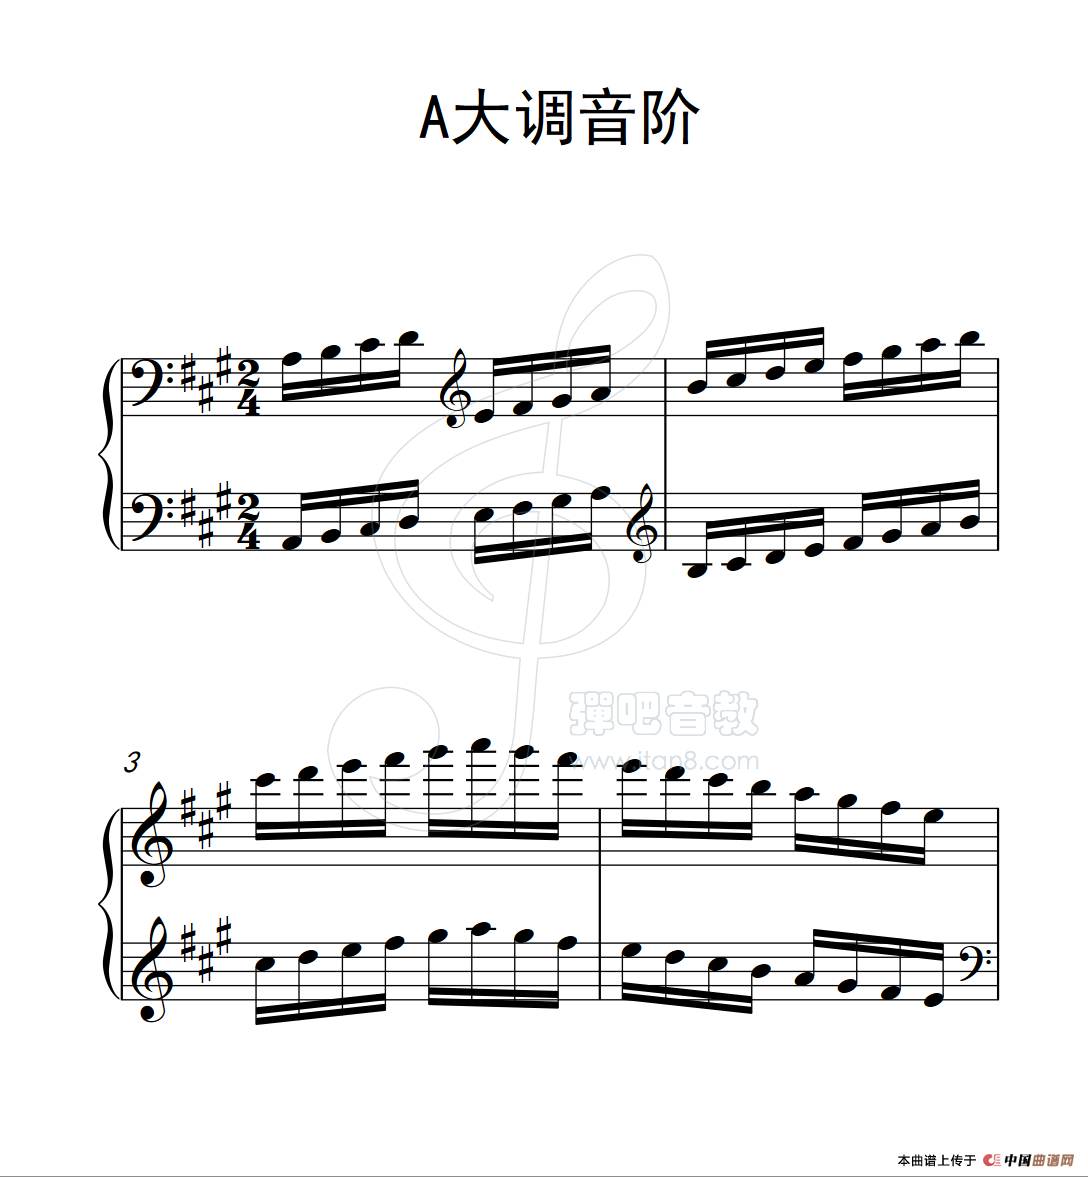 第三级 A大调音阶(中国音乐学院钢琴考级作品1~6级)